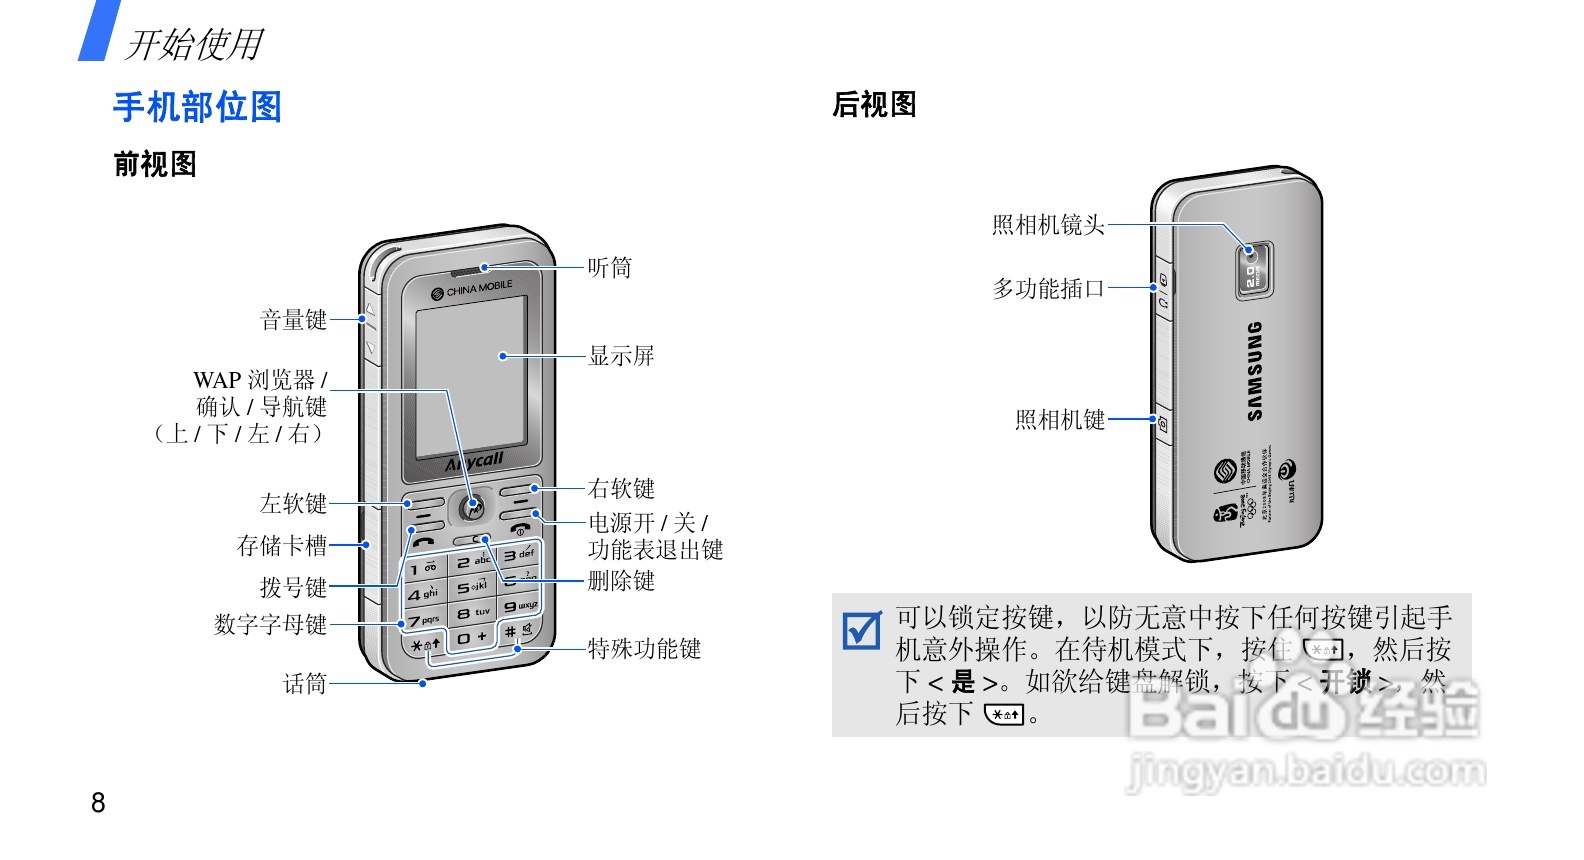 三星sgh-j218手机使用说明书:[1]